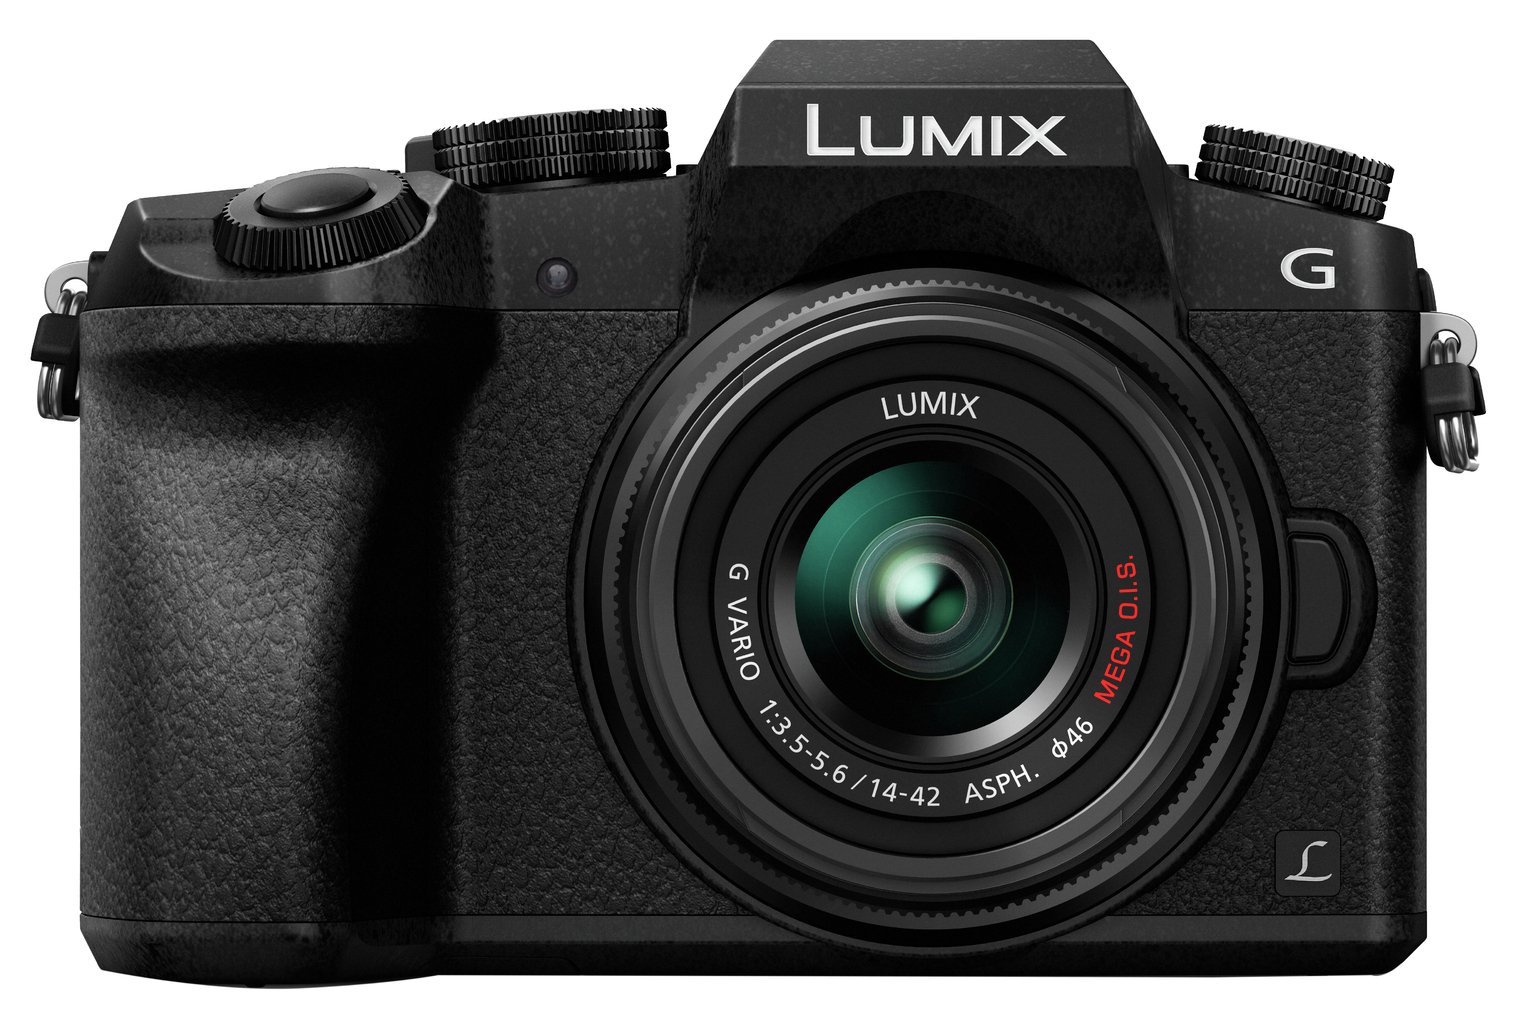 Panasonic Lumix G7 Mirrorless Camera With 14-42mm Lens